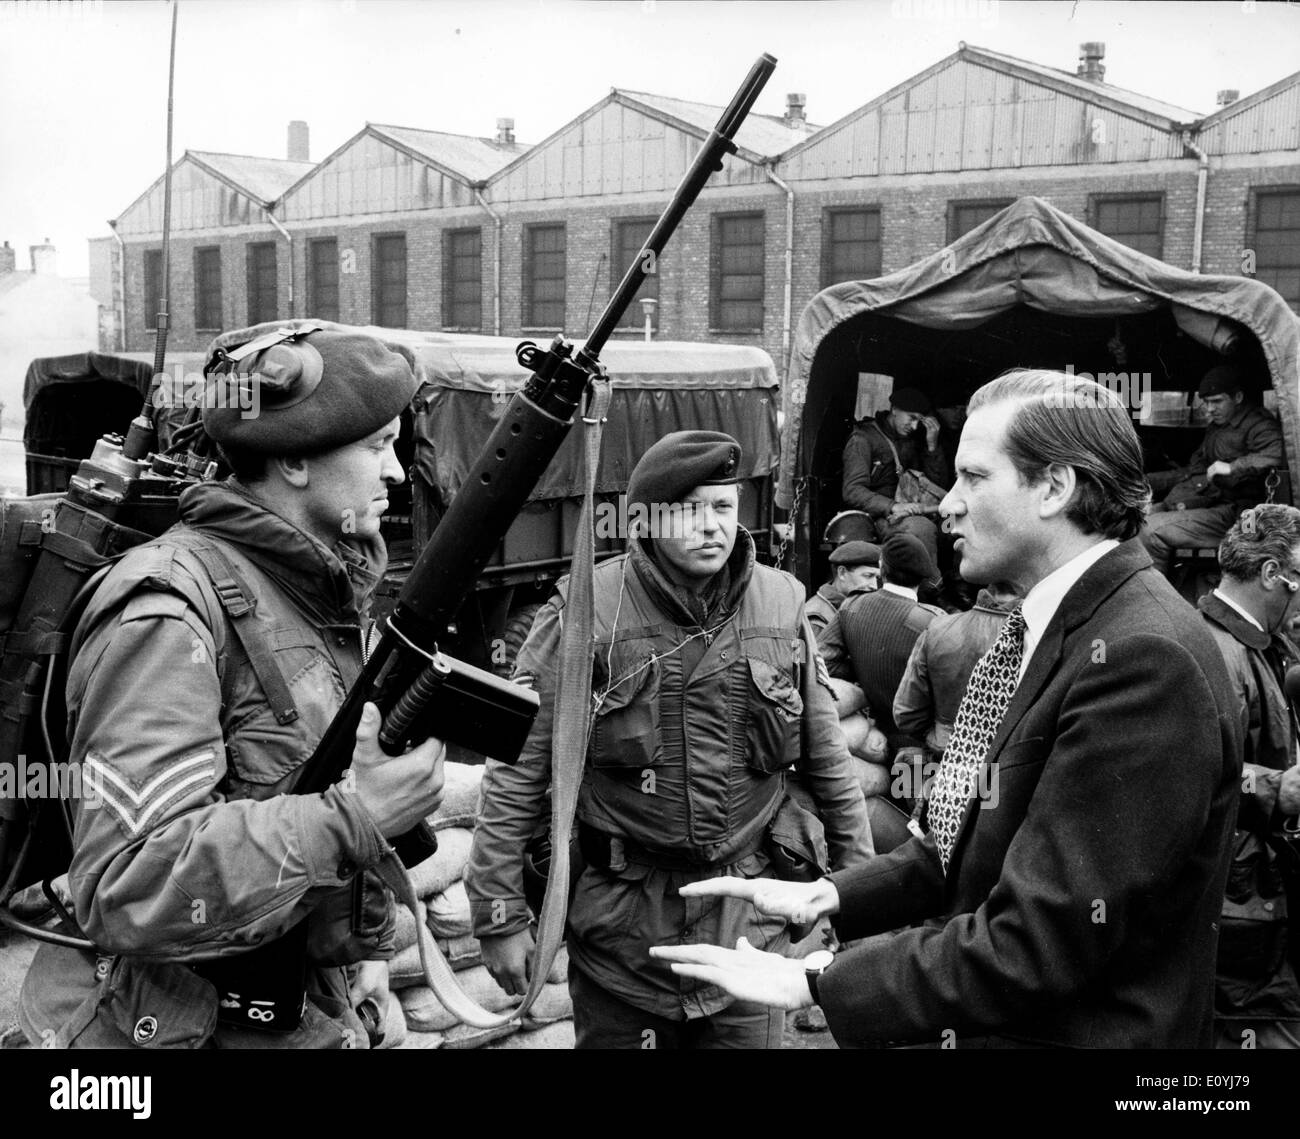 Jul 04, 1970 ; Belfast, Royaume-Uni ; un couvre-feu a été imposé par l'armée à Belfast après une nuit d'émeutes dans lesquelles au moins cinq personnes ont été tuées. La photo montre LORD BALNIEL Ministeer, d'État, de la défense, de parler à certains des troupes britanniques qui sont dans la région de Belfast Crumlin Road. Banque D'Images